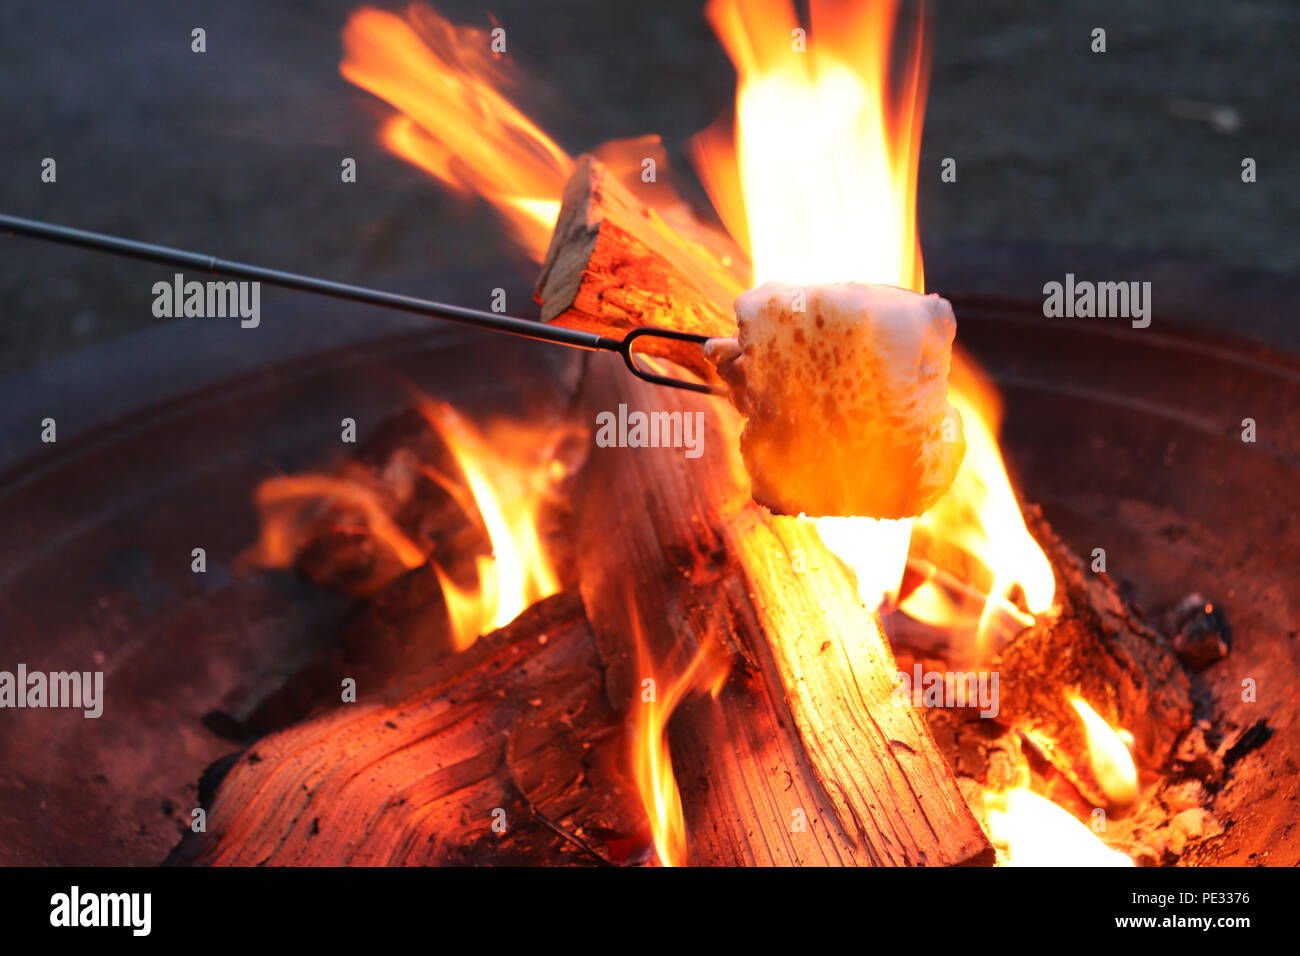 Incendio in una buca per il fuoco, tostatura marshmallow Foto Stock